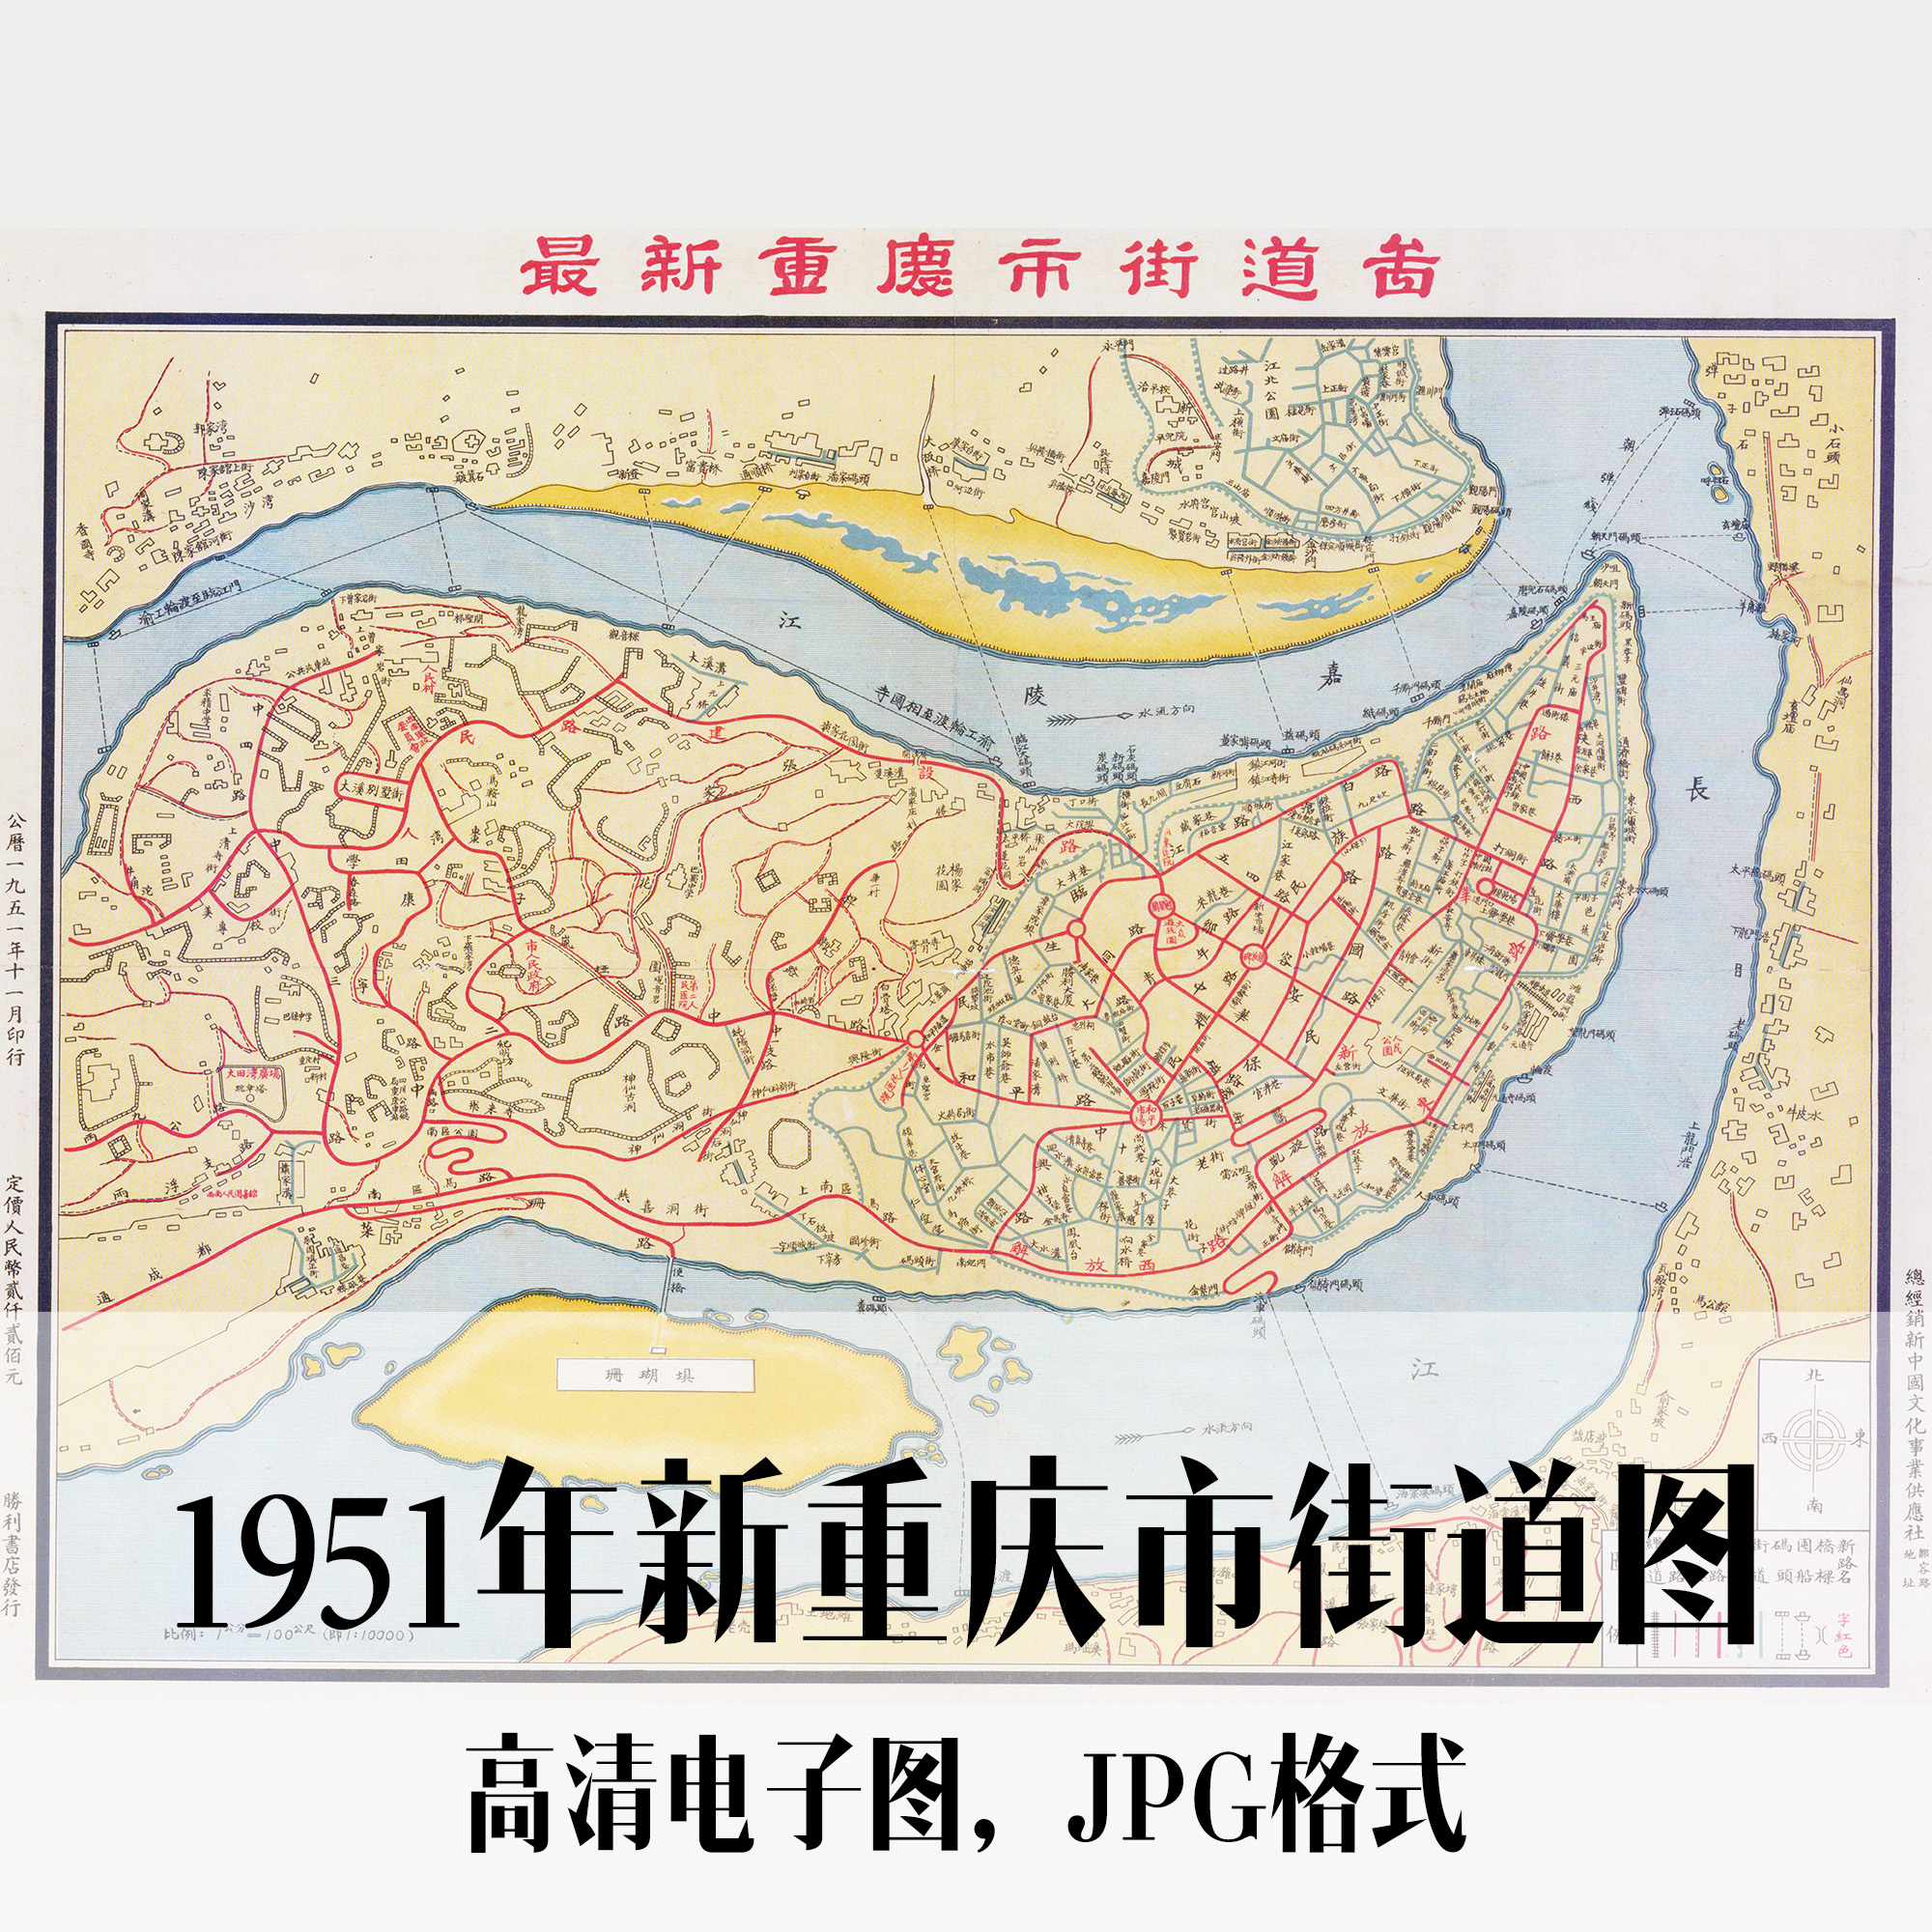 1951年新重庆市街道图民国电子手绘老地图历史地理资料素材